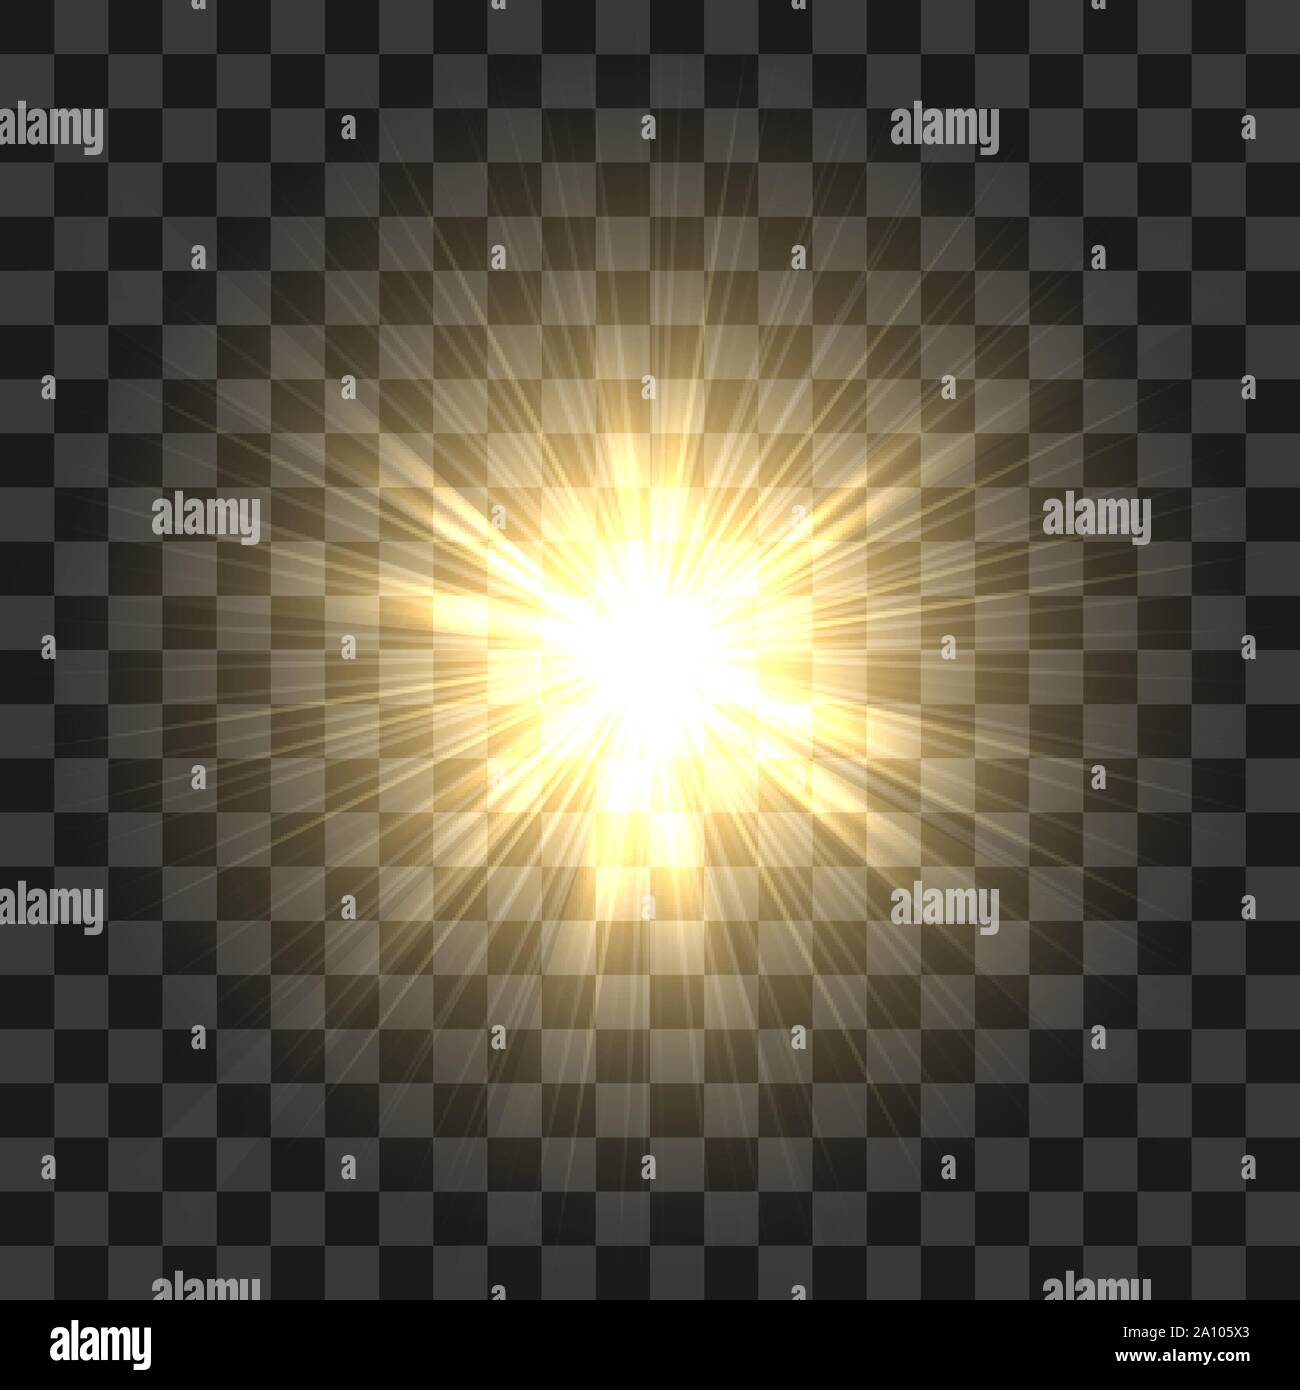 Realistico dei raggi solari. Il giallo sole ray glow abstract shine effetto luce sbeam starburst sole incandescente isolato su sfondo trasparente. Vector illust Illustrazione Vettoriale